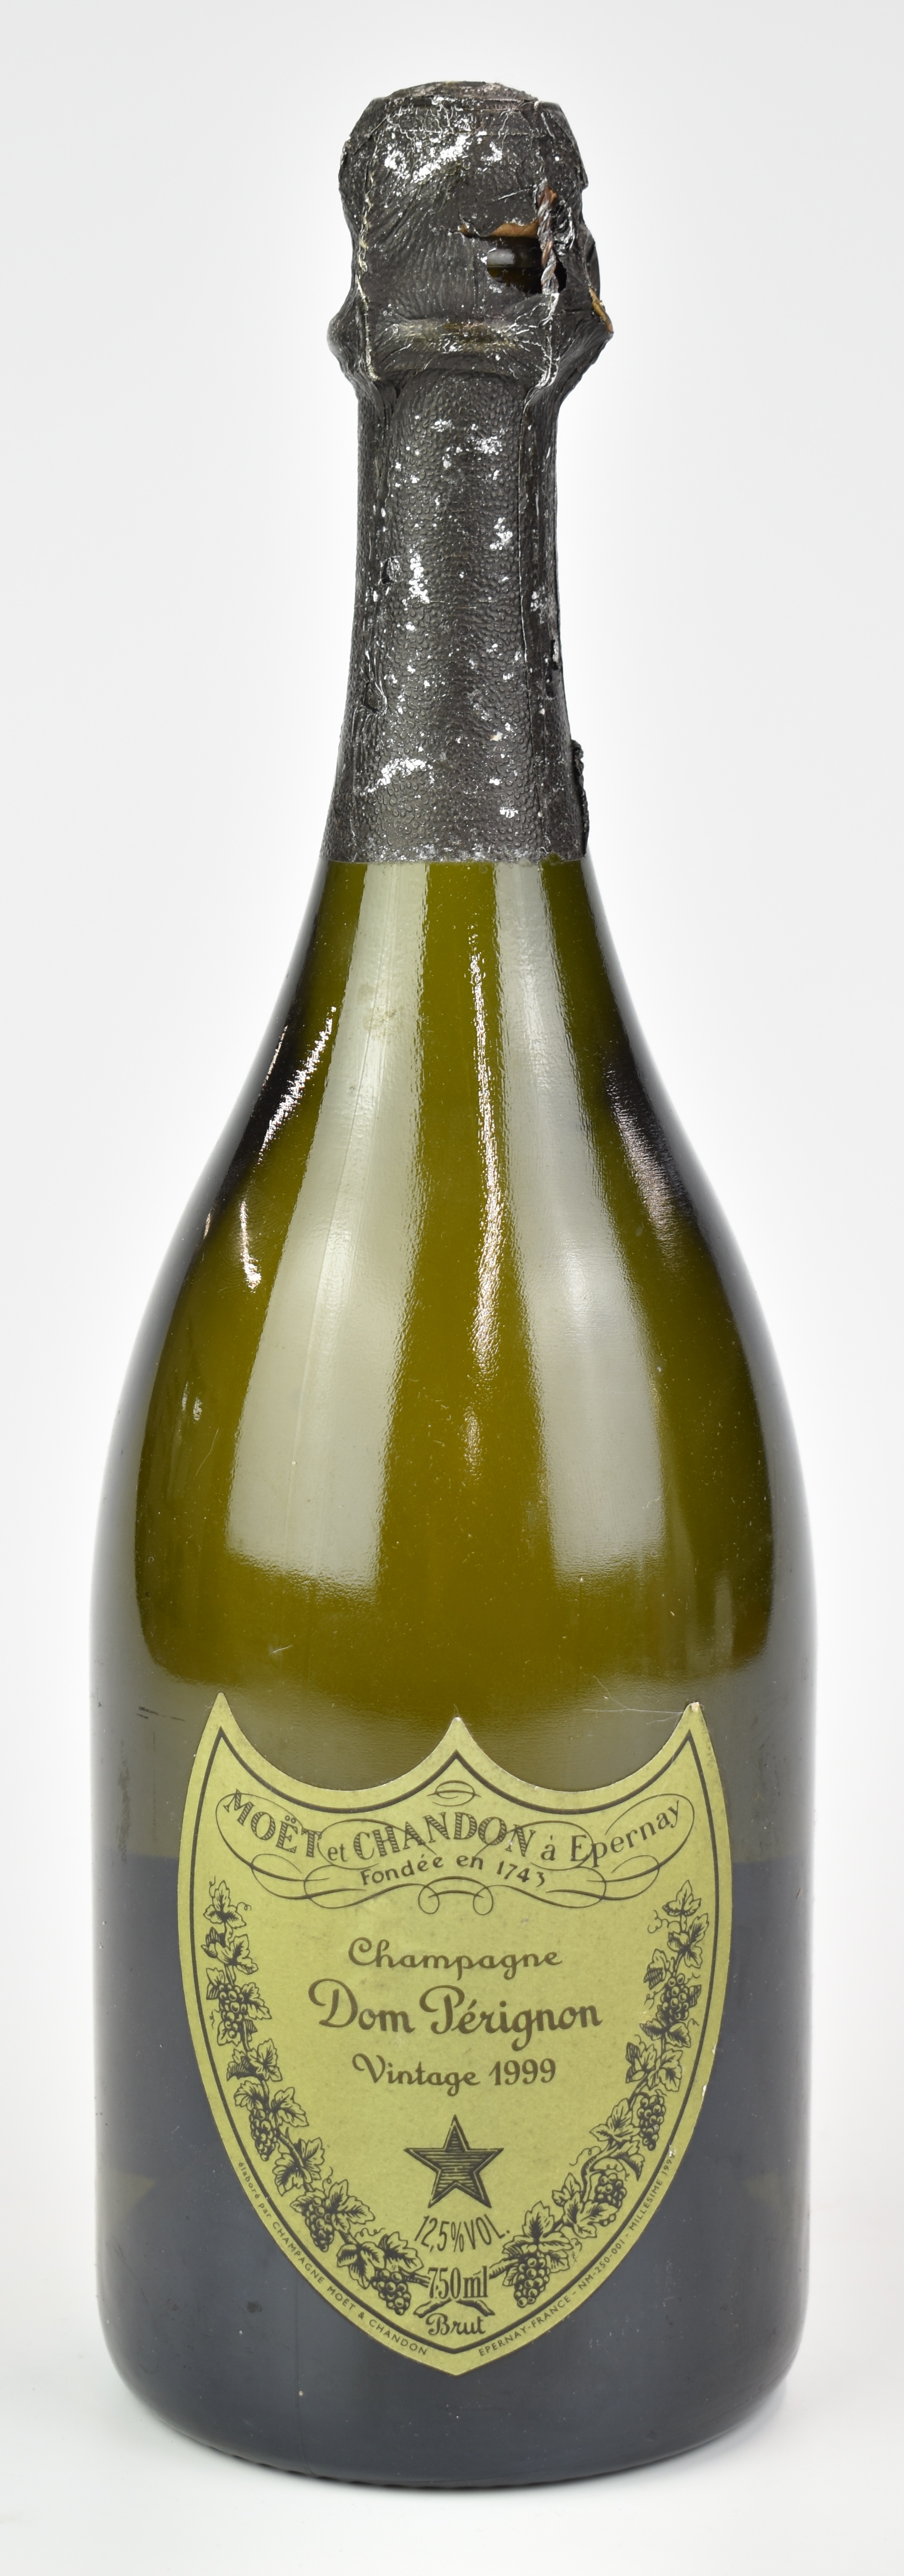 Moët et Chandon Dom Pérignon Vintage 1999 Champagne, 750ml, 12.5% vol